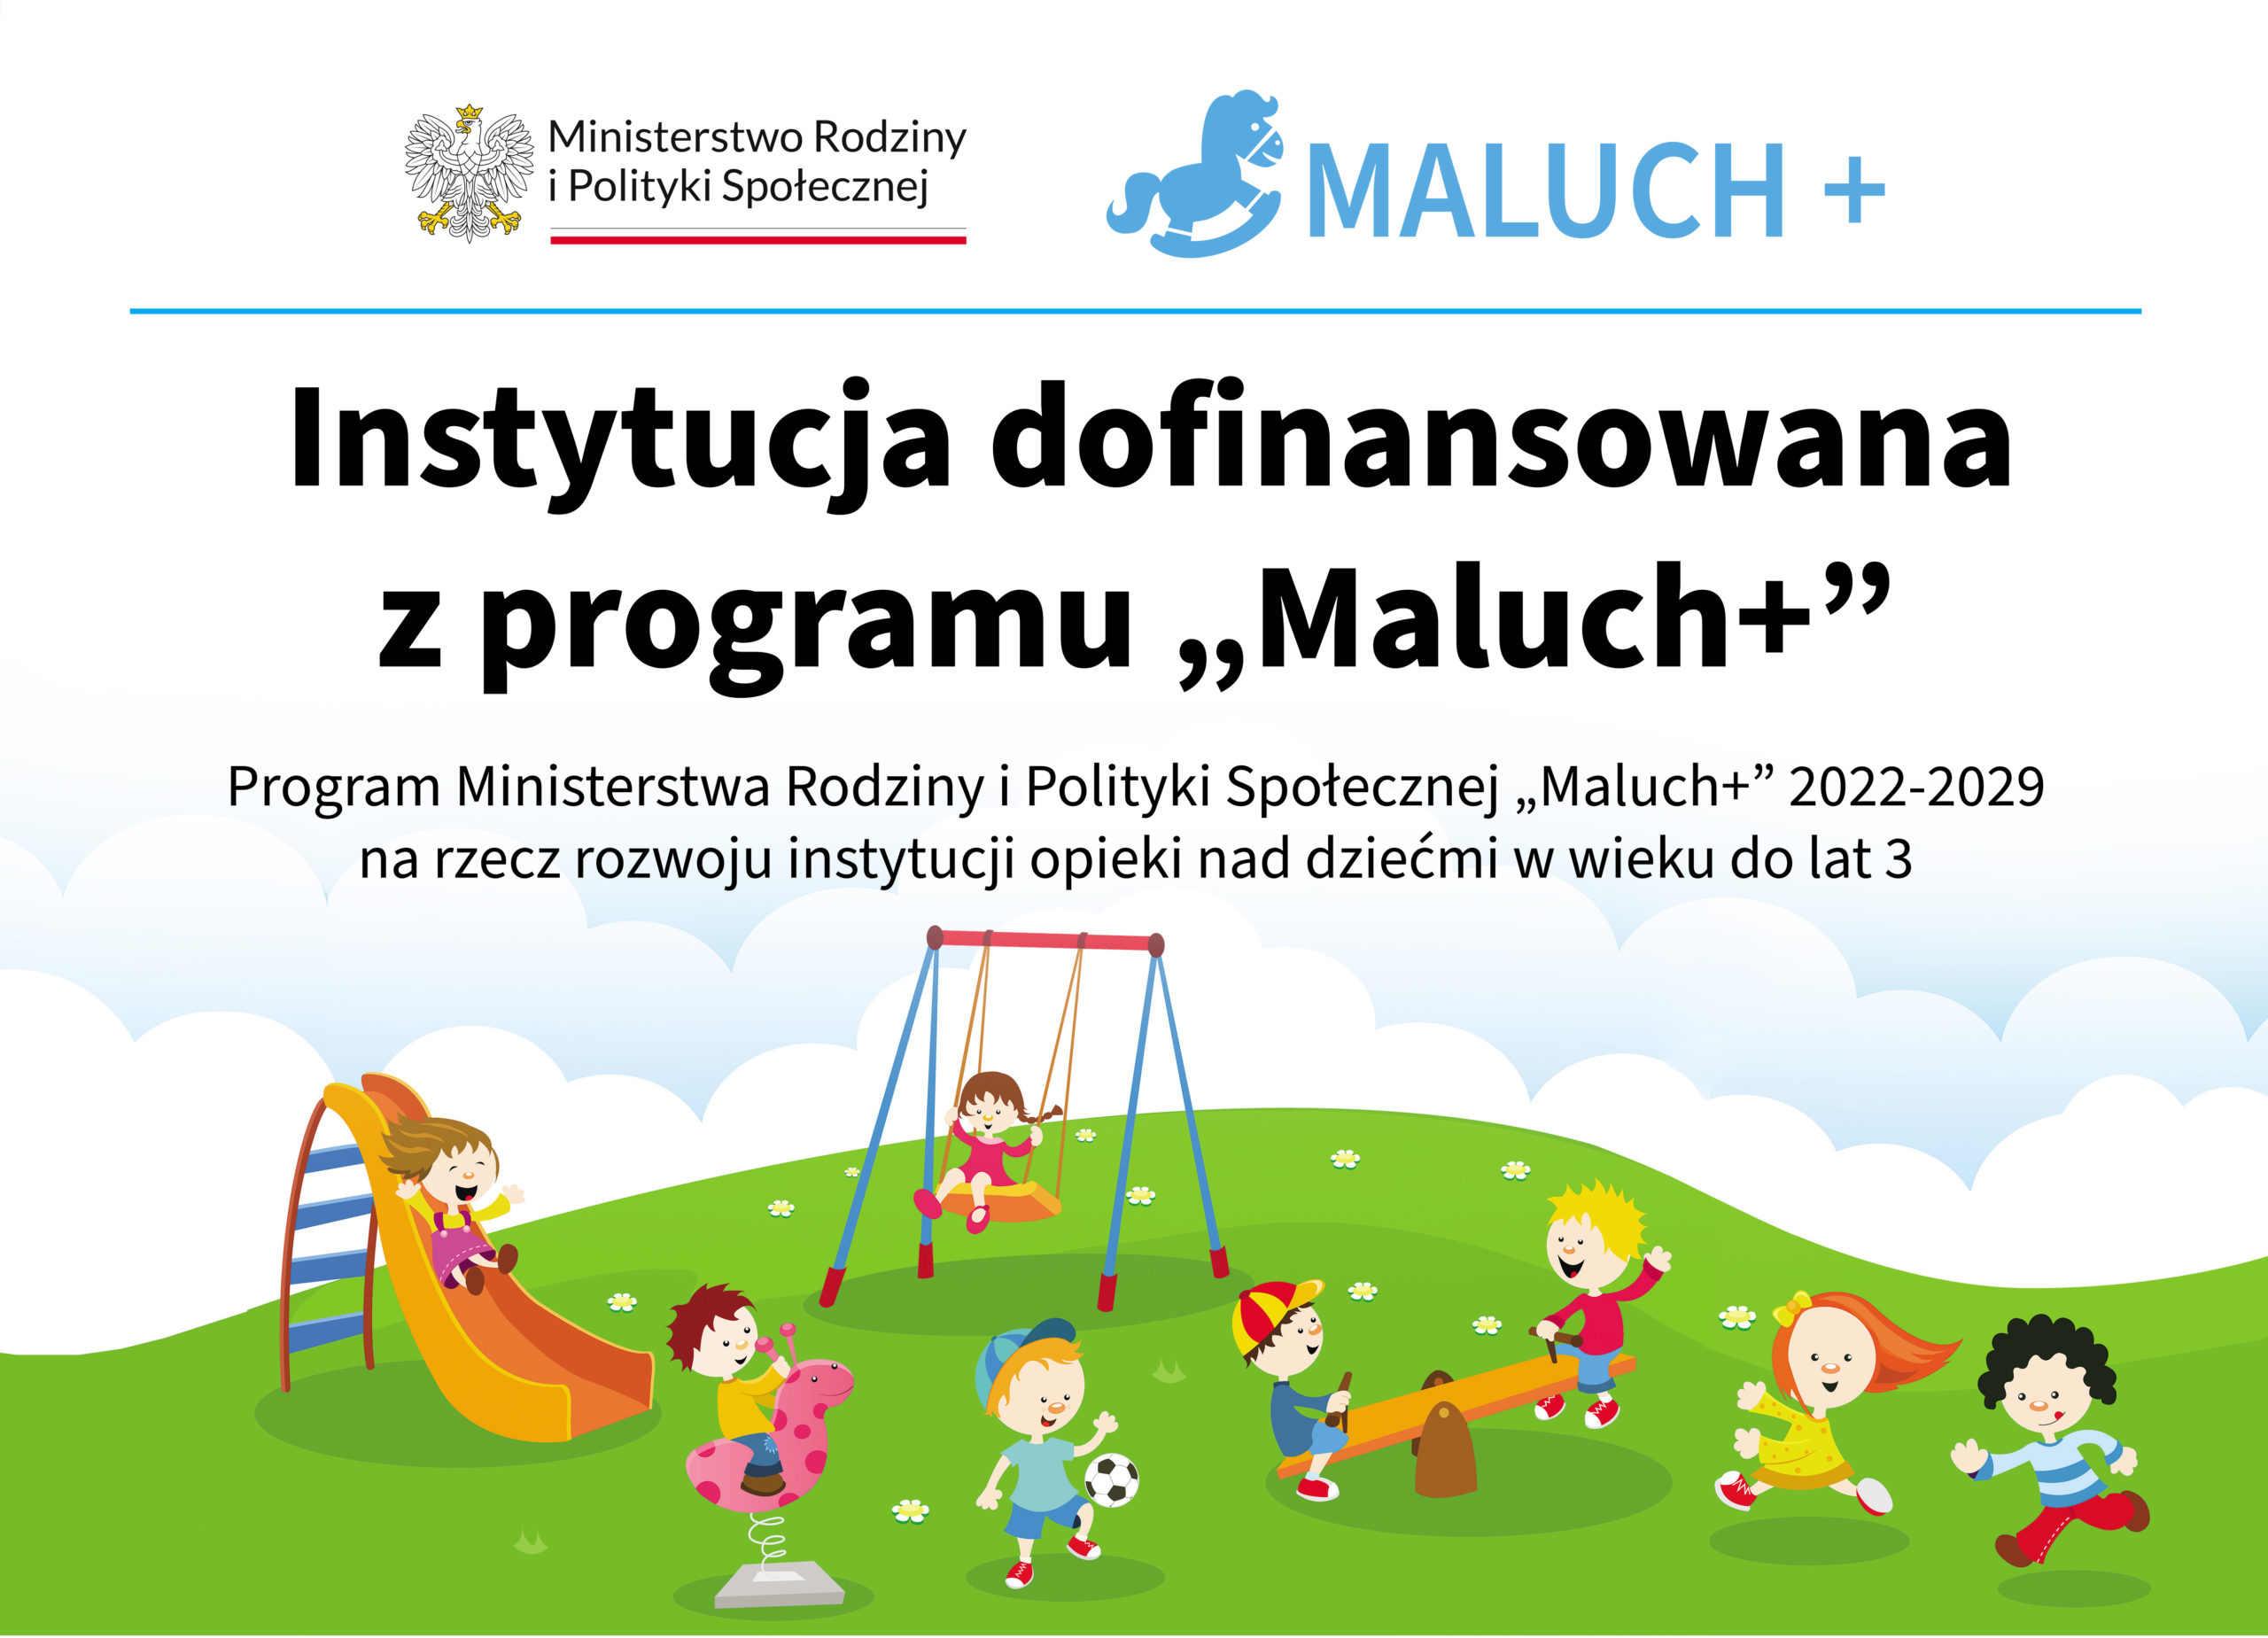 Maluch+ 2022-2029